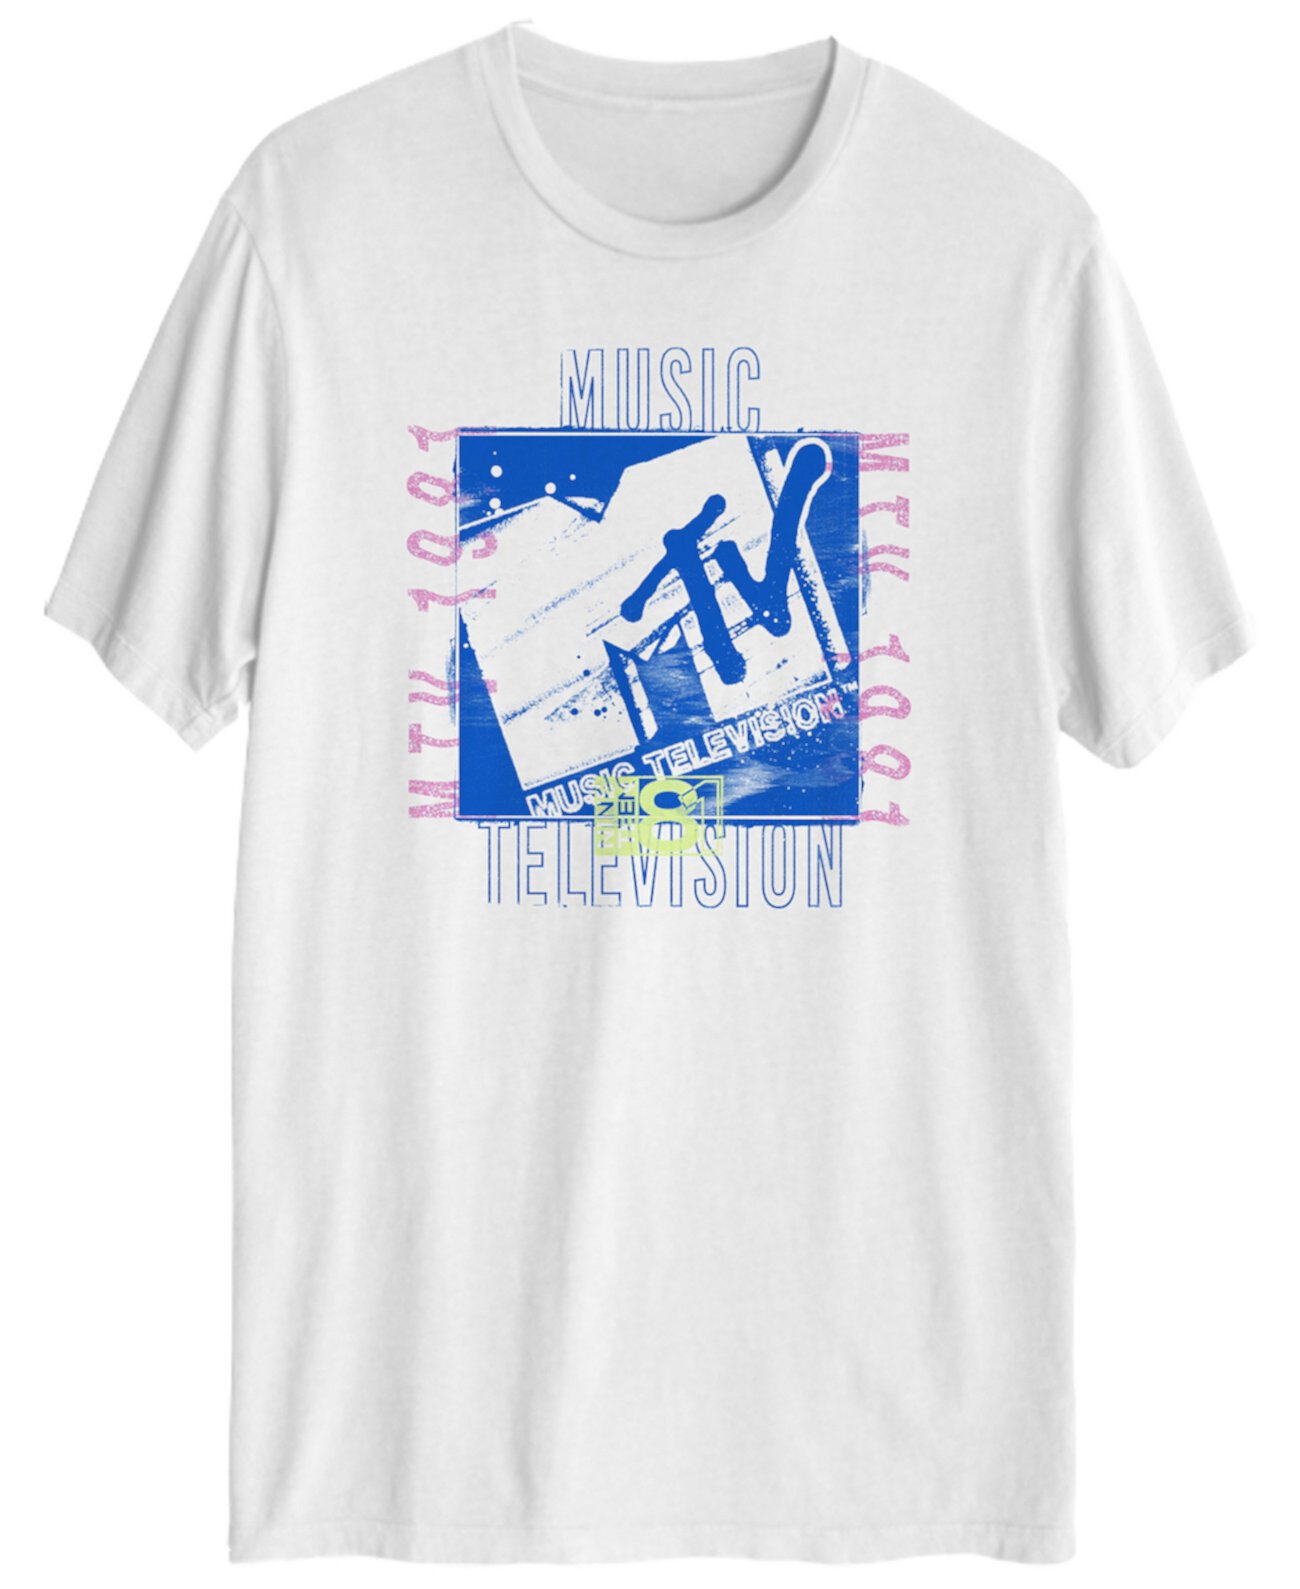 Мужская футболка MTV Grunge с коротким рукавом Hybrid